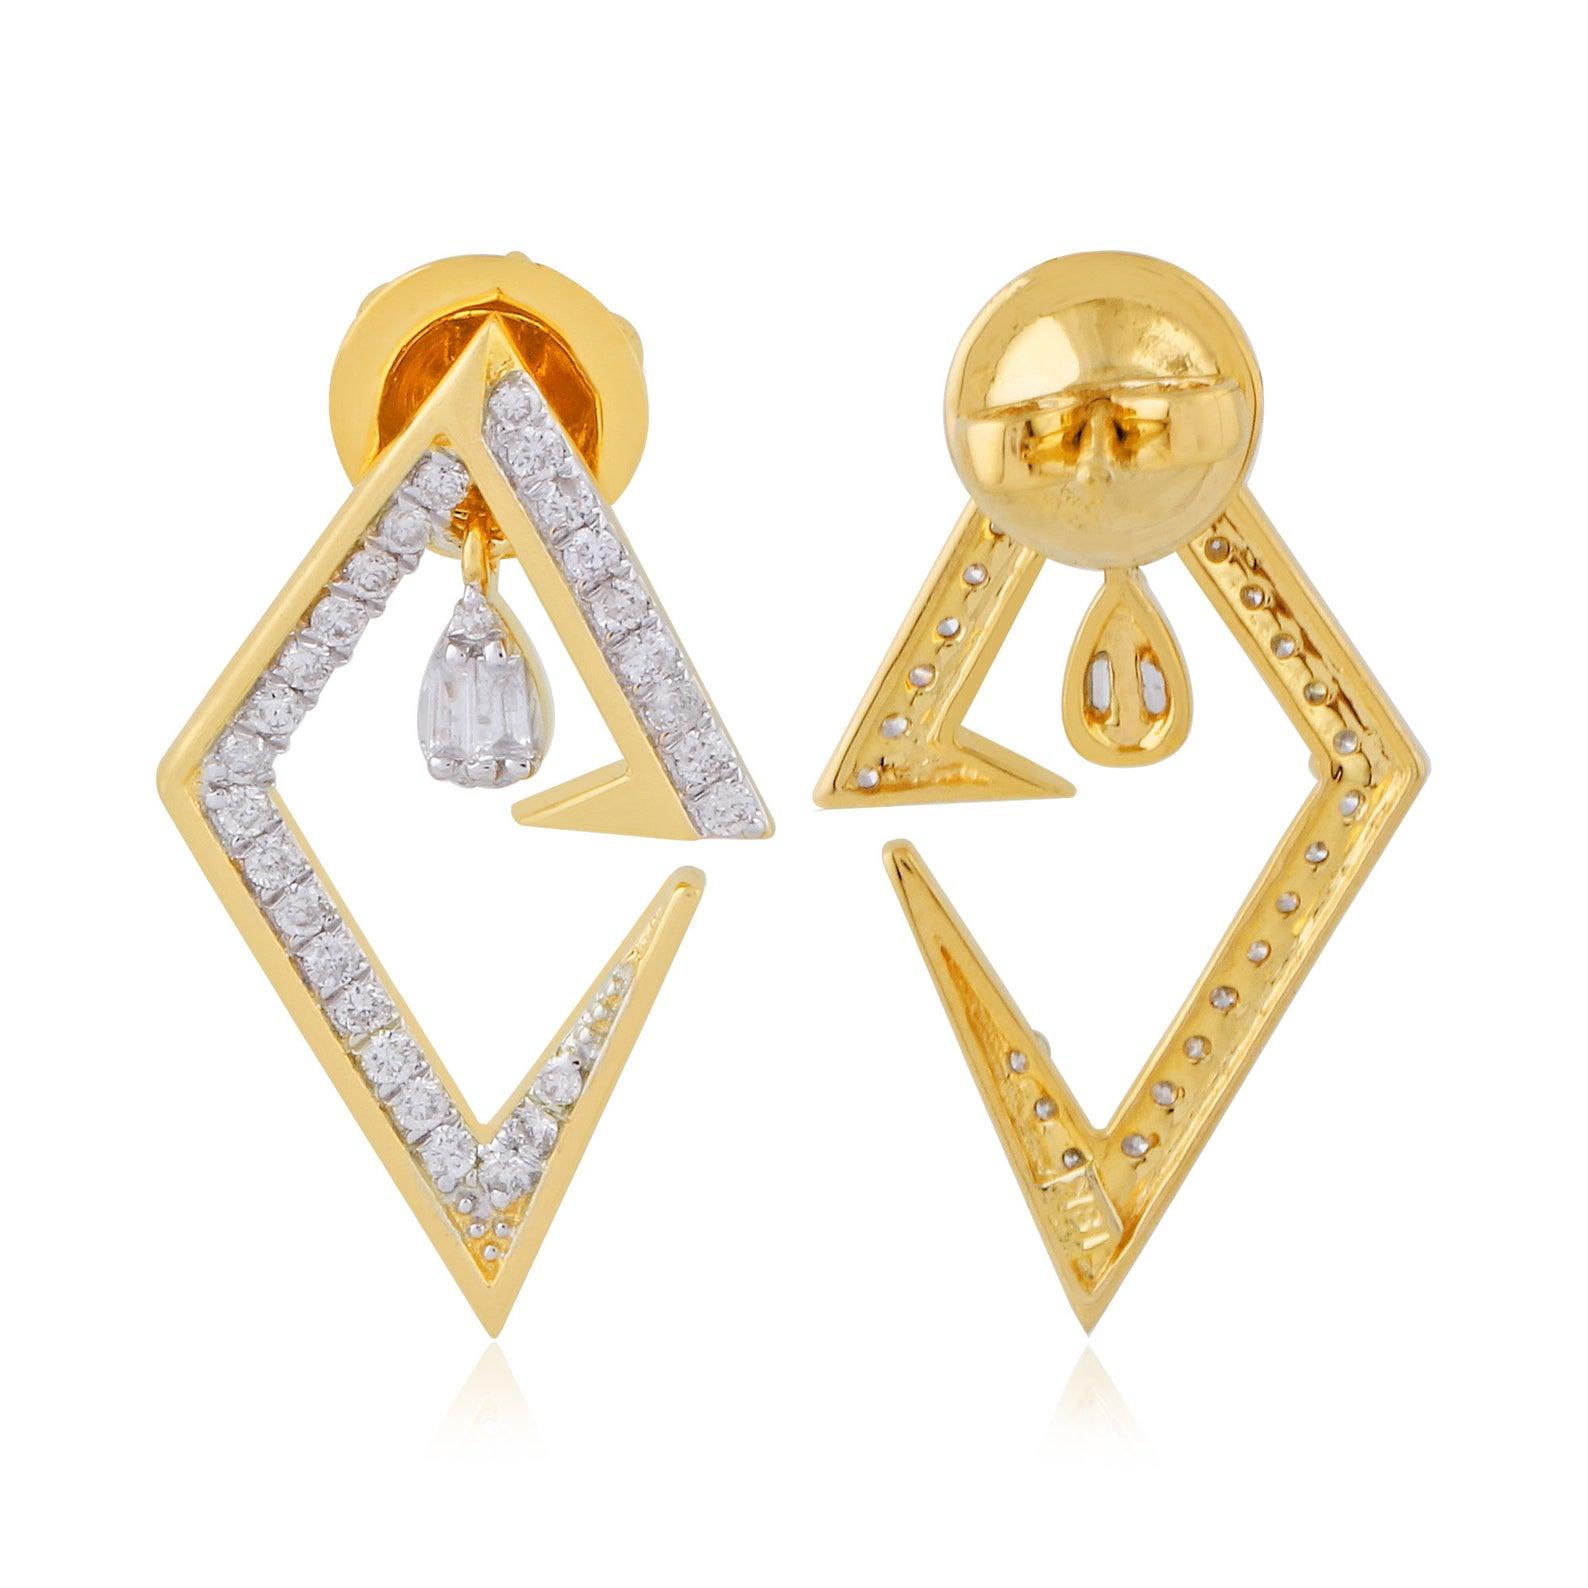 Diese wunderschönen Ohrstecker sind aus 14-karätigem Gold gegossen und von Hand mit 0,60 Karat Diamanten besetzt. 

FOLLOW MEGHNA JEWELS Storefront, um die neueste Kollektion und exklusive Stücke zu sehen. Meghna Jewels ist stolz darauf, ein